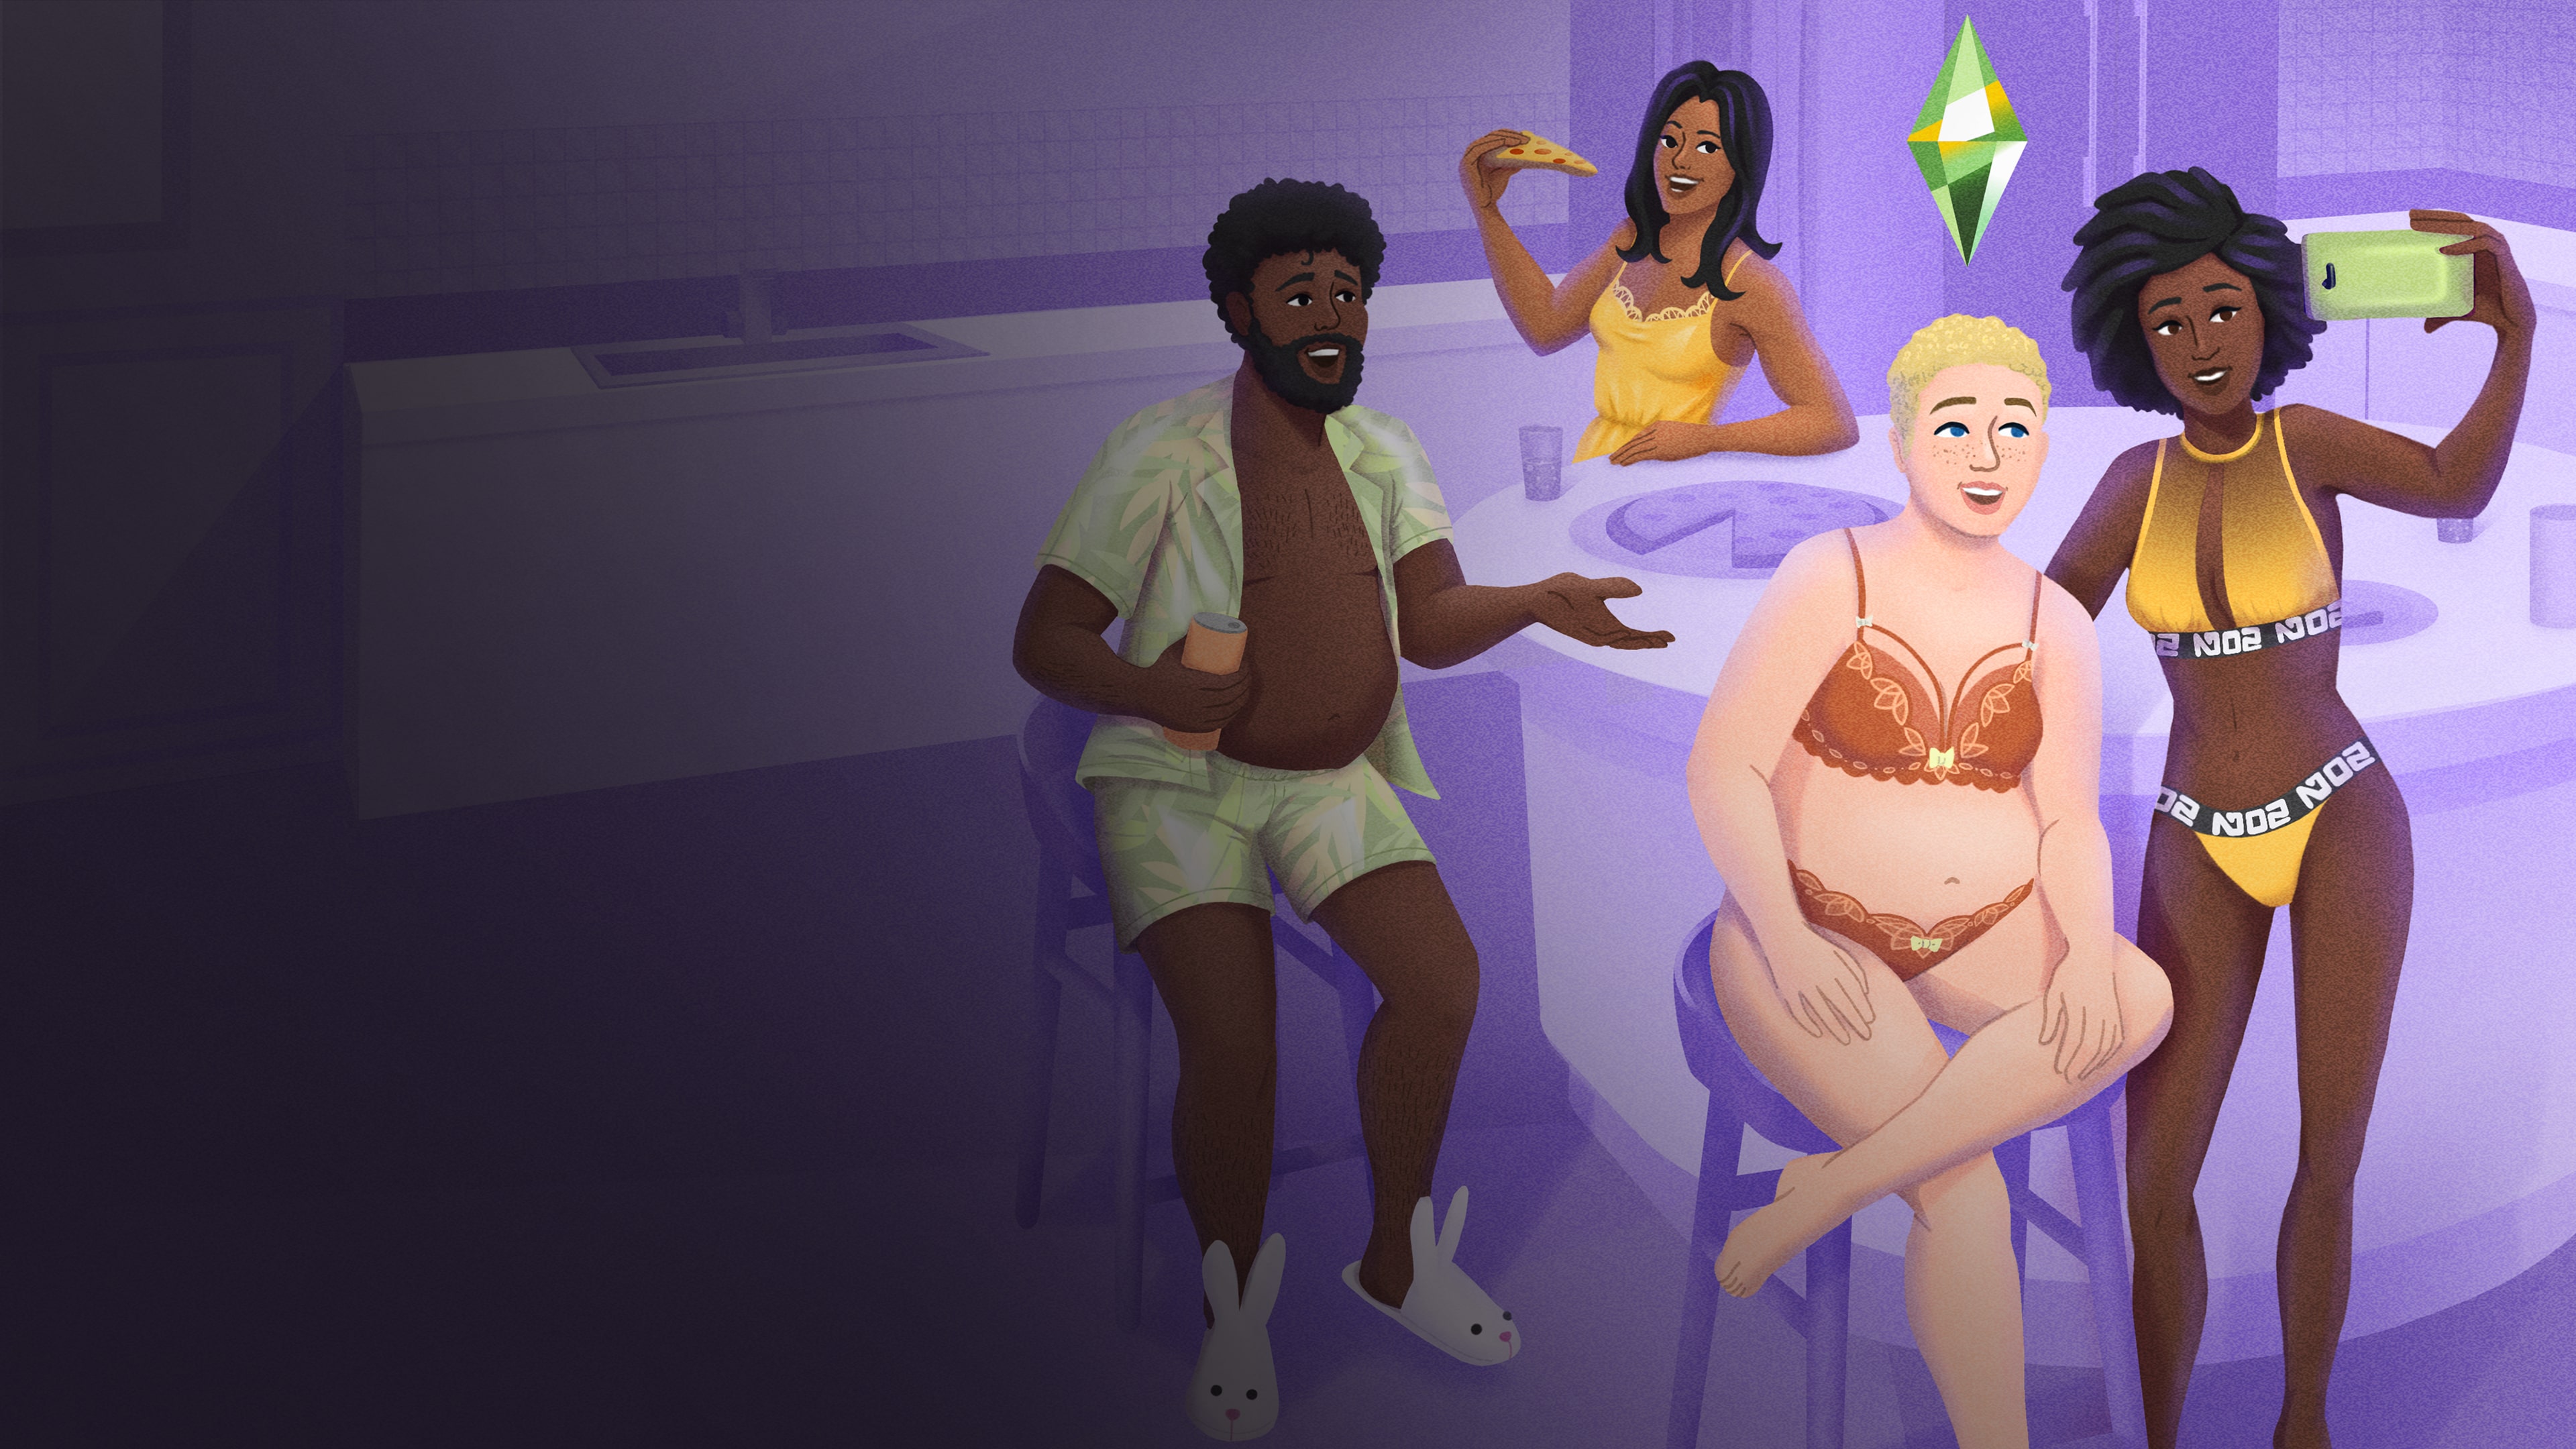 Die Sims™ 4 Unterwäsche-Set